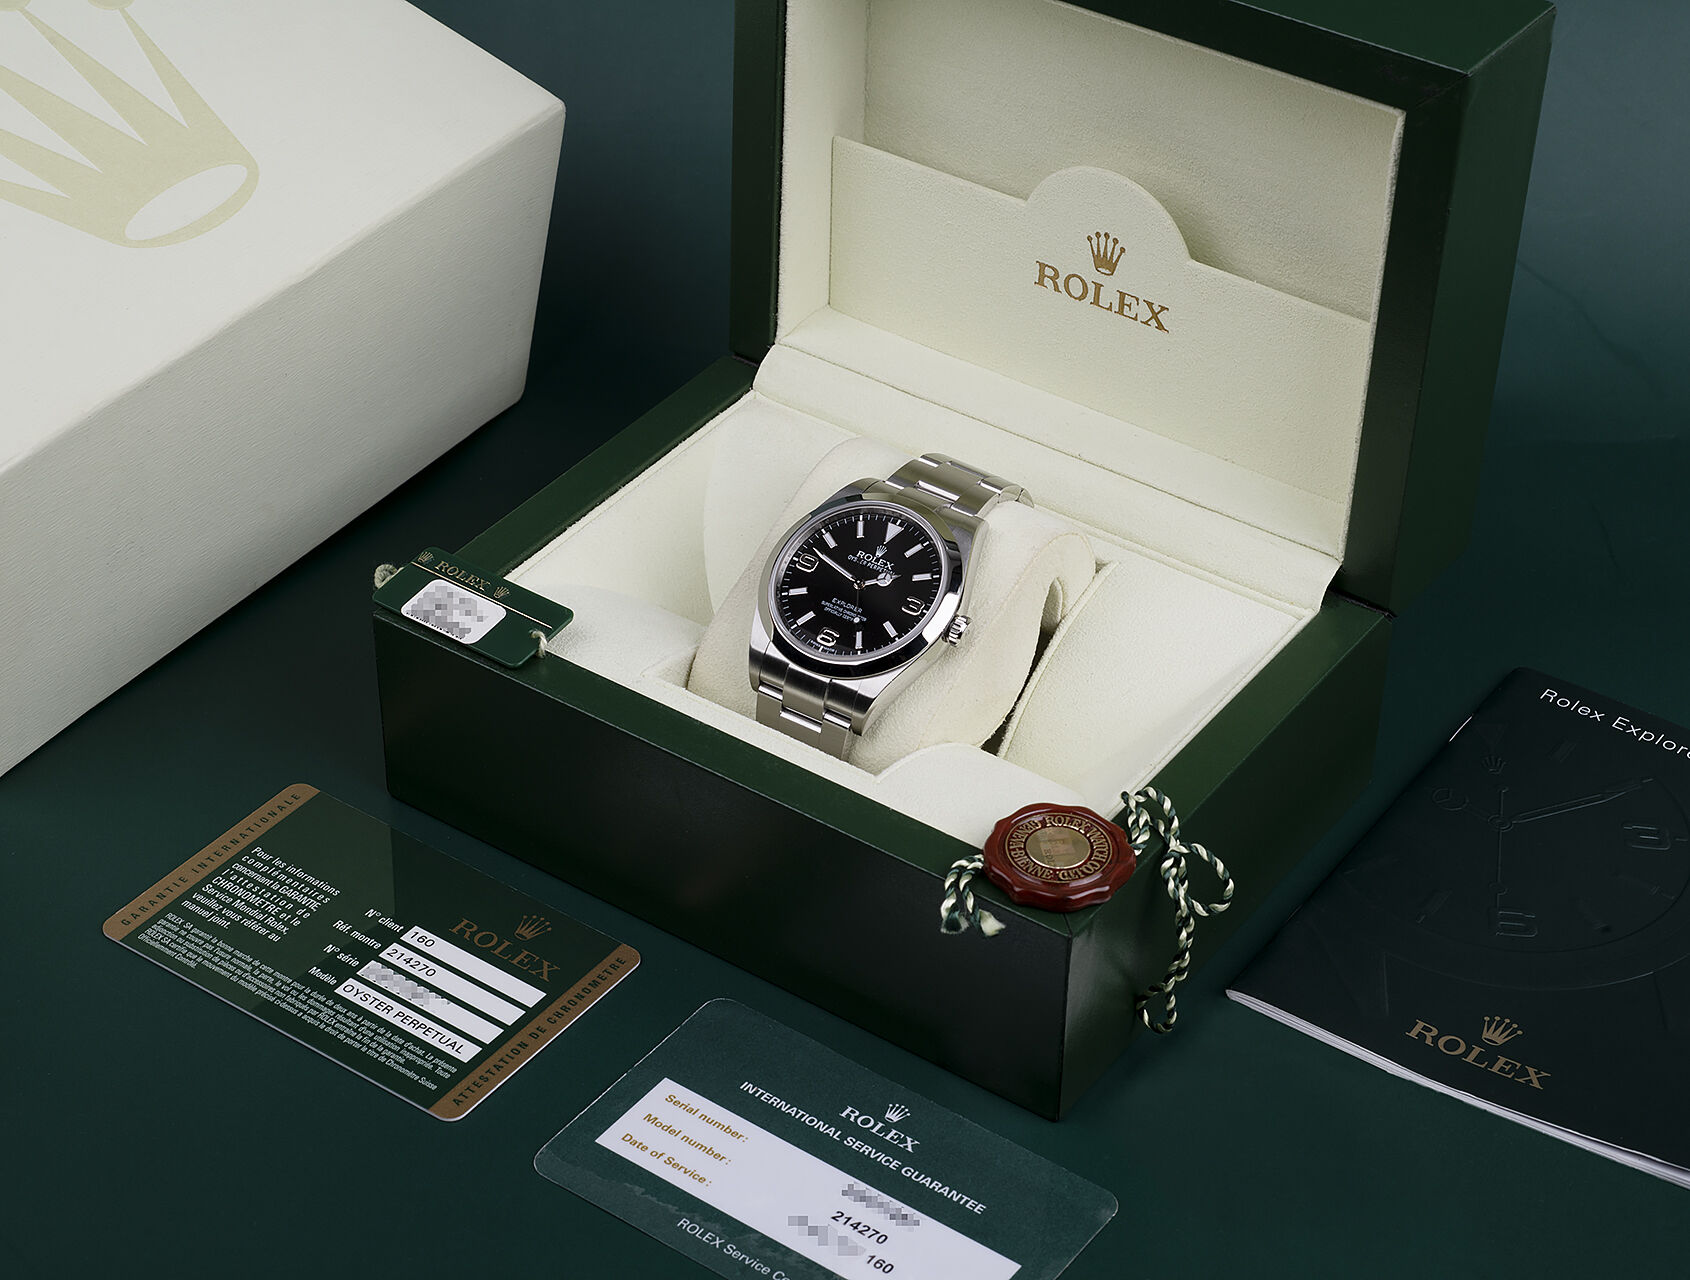 ref 214270 | 214270 - Box & Certificate | Rolex Explorer